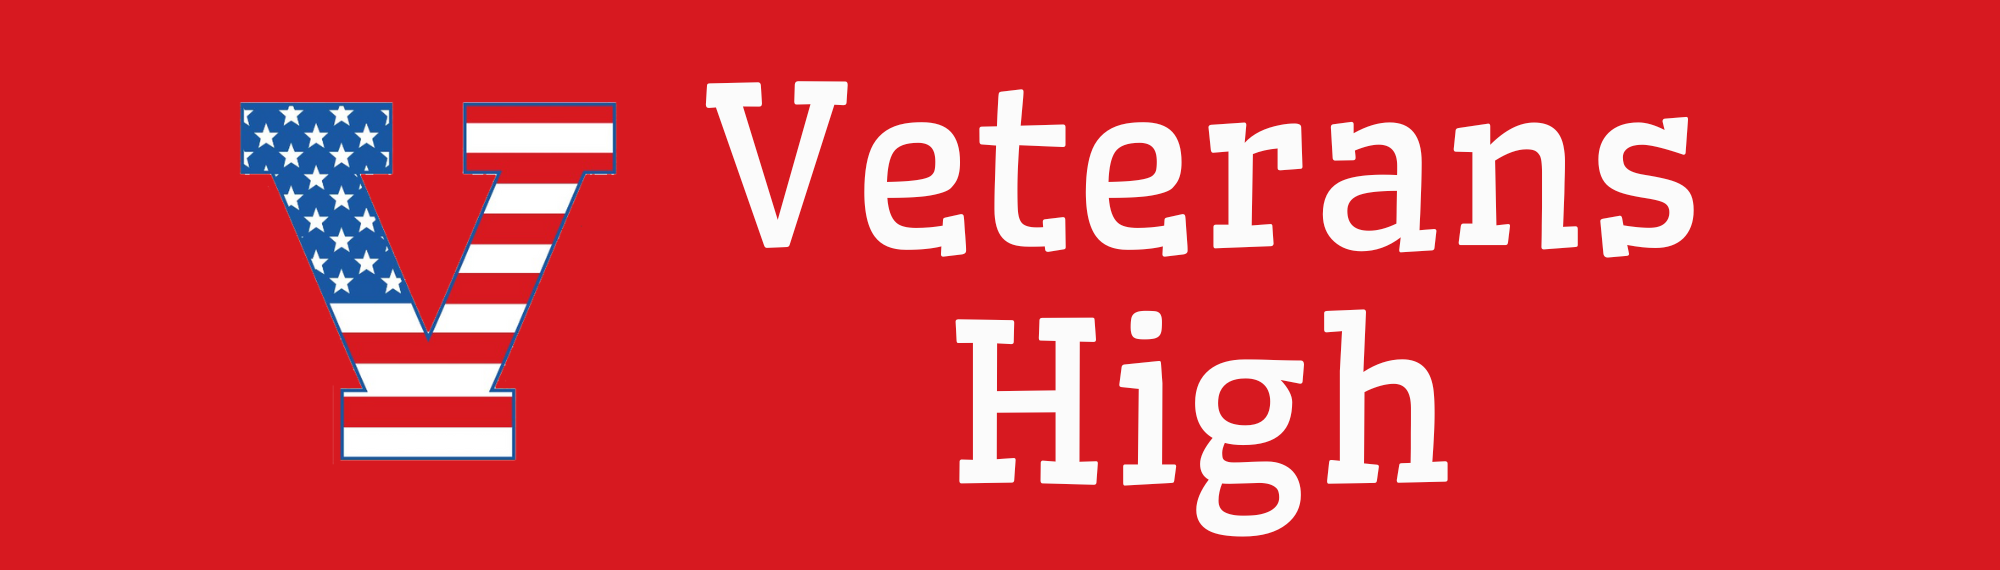 Veterans High